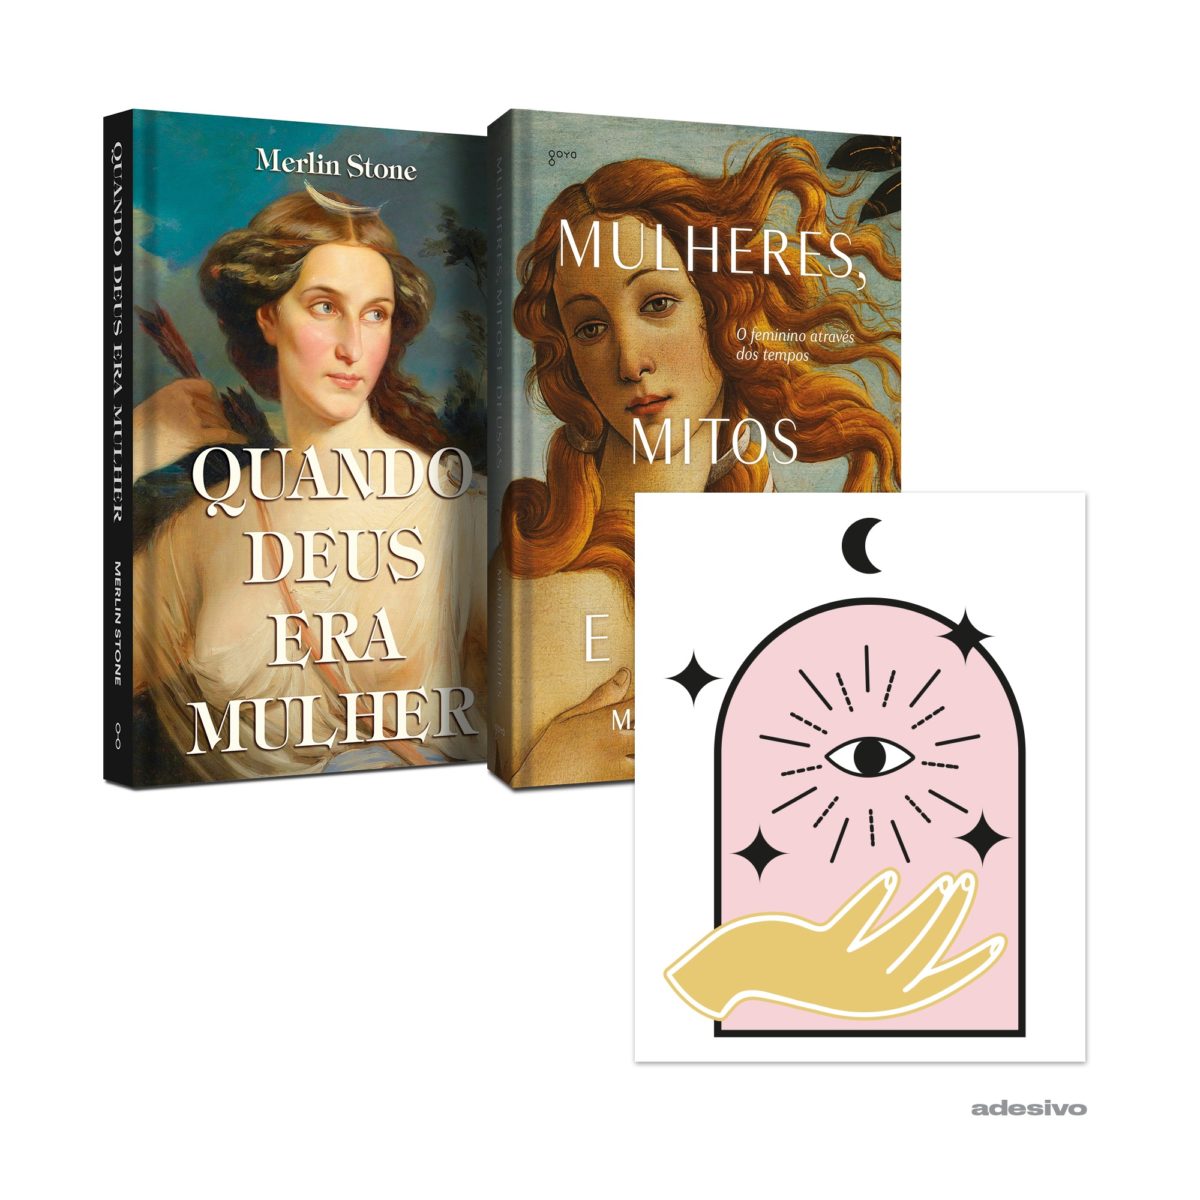 Kit da Goya: "Quando Deus era Mulher" + "Mulheres, Mitos e Deusas" + adesivo